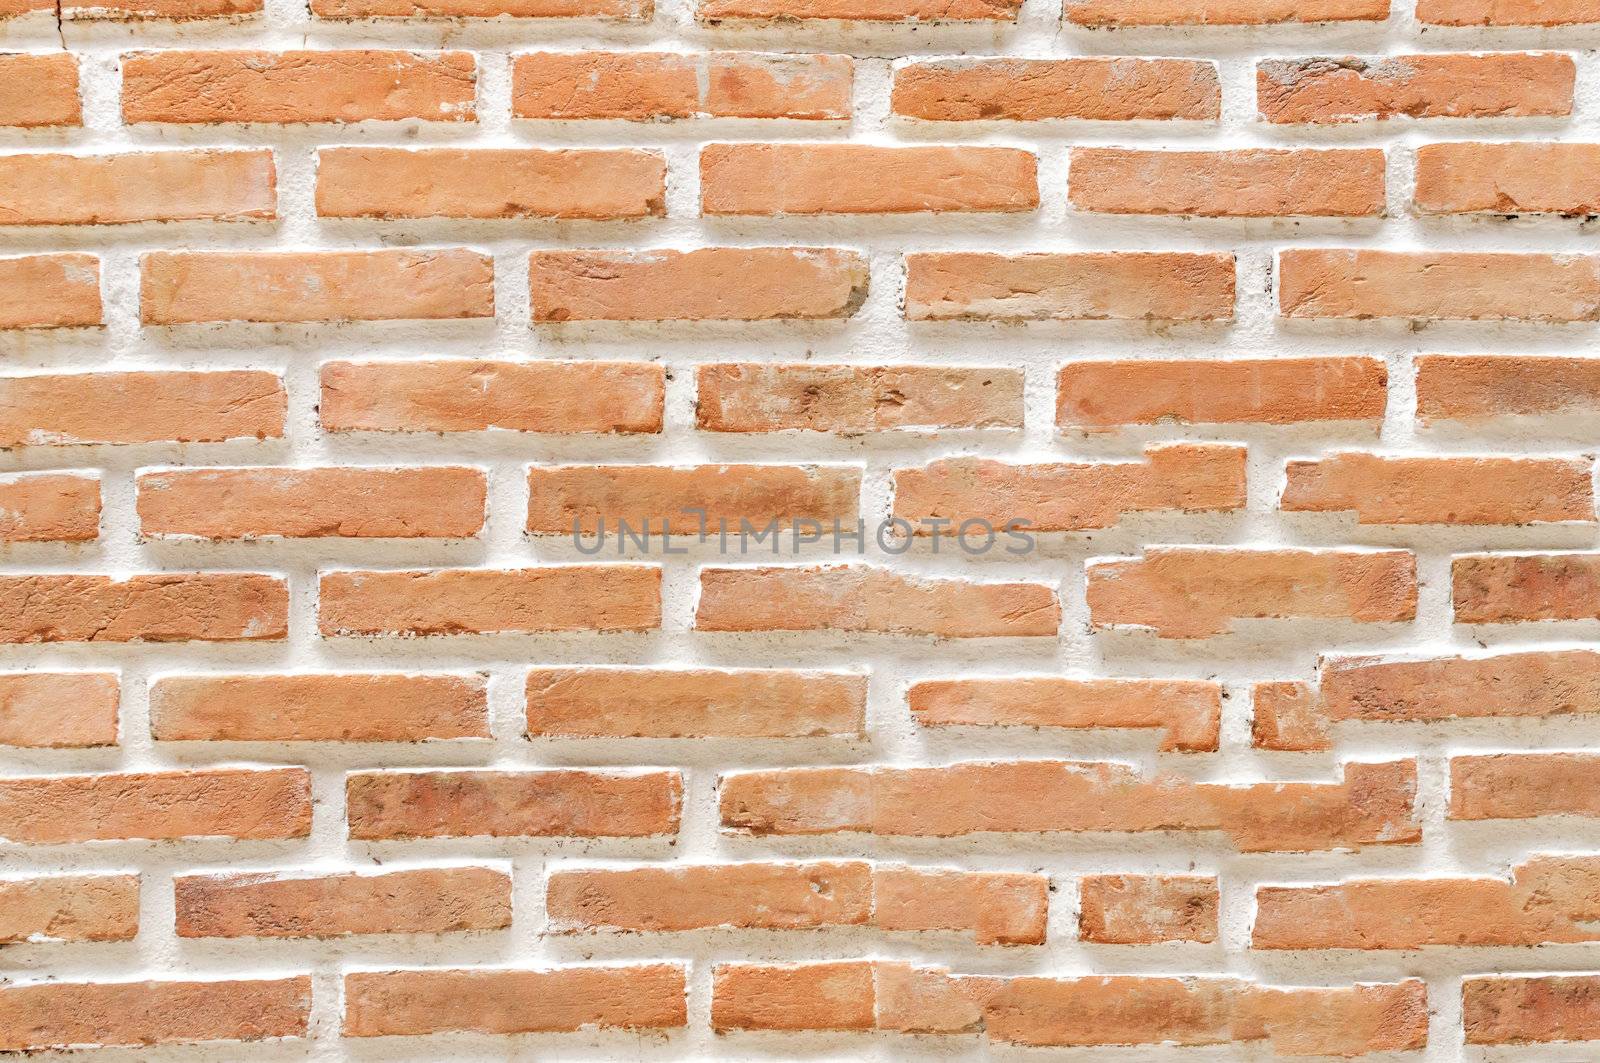 A brick wall brick wall by nopparats